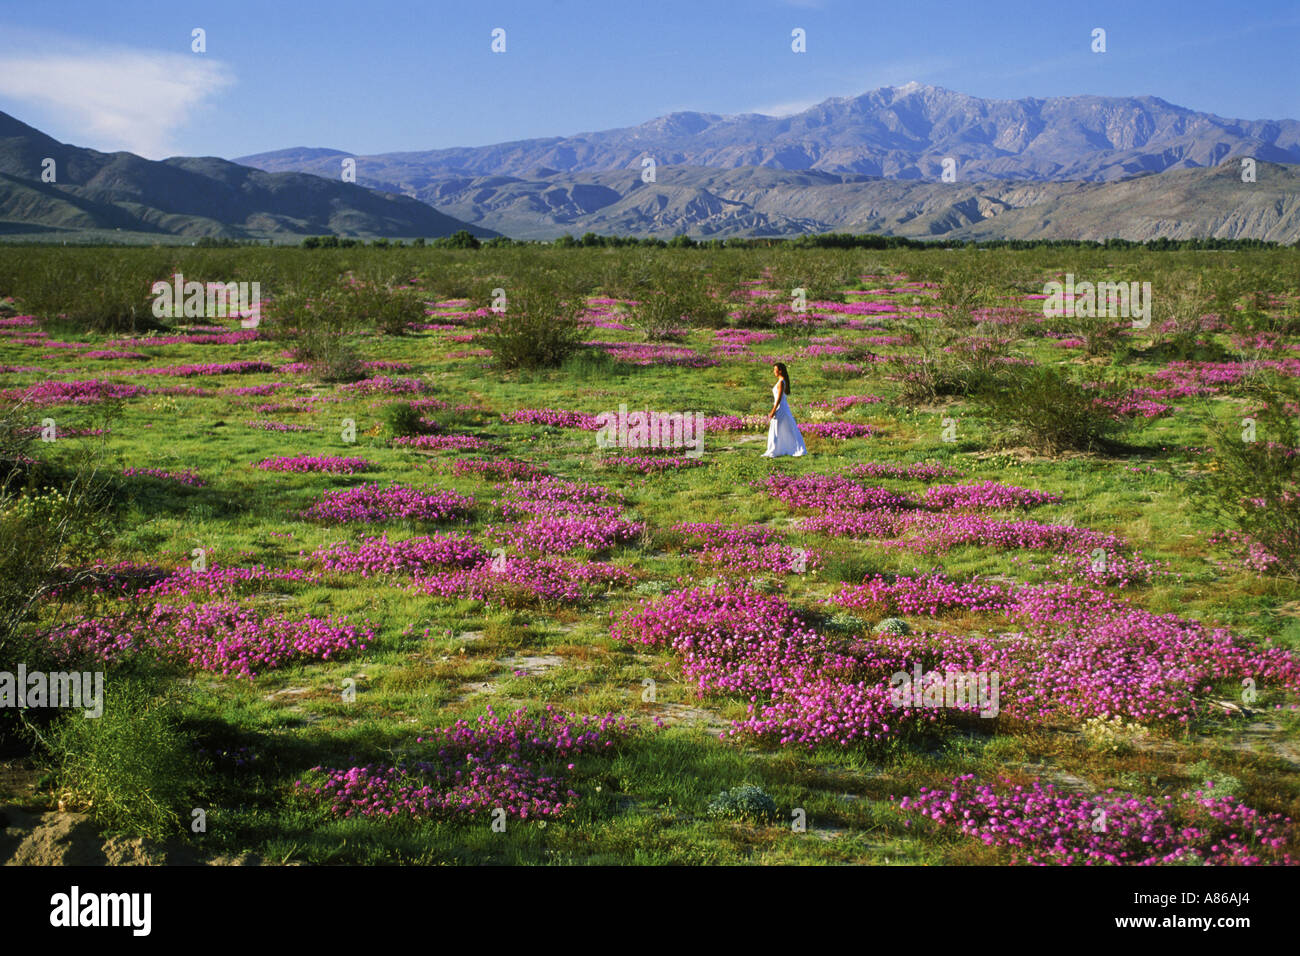 Dame im violetten Sandverbenas Blumenfeld in Kalifornien Anza Borrego Wüste Stockfoto